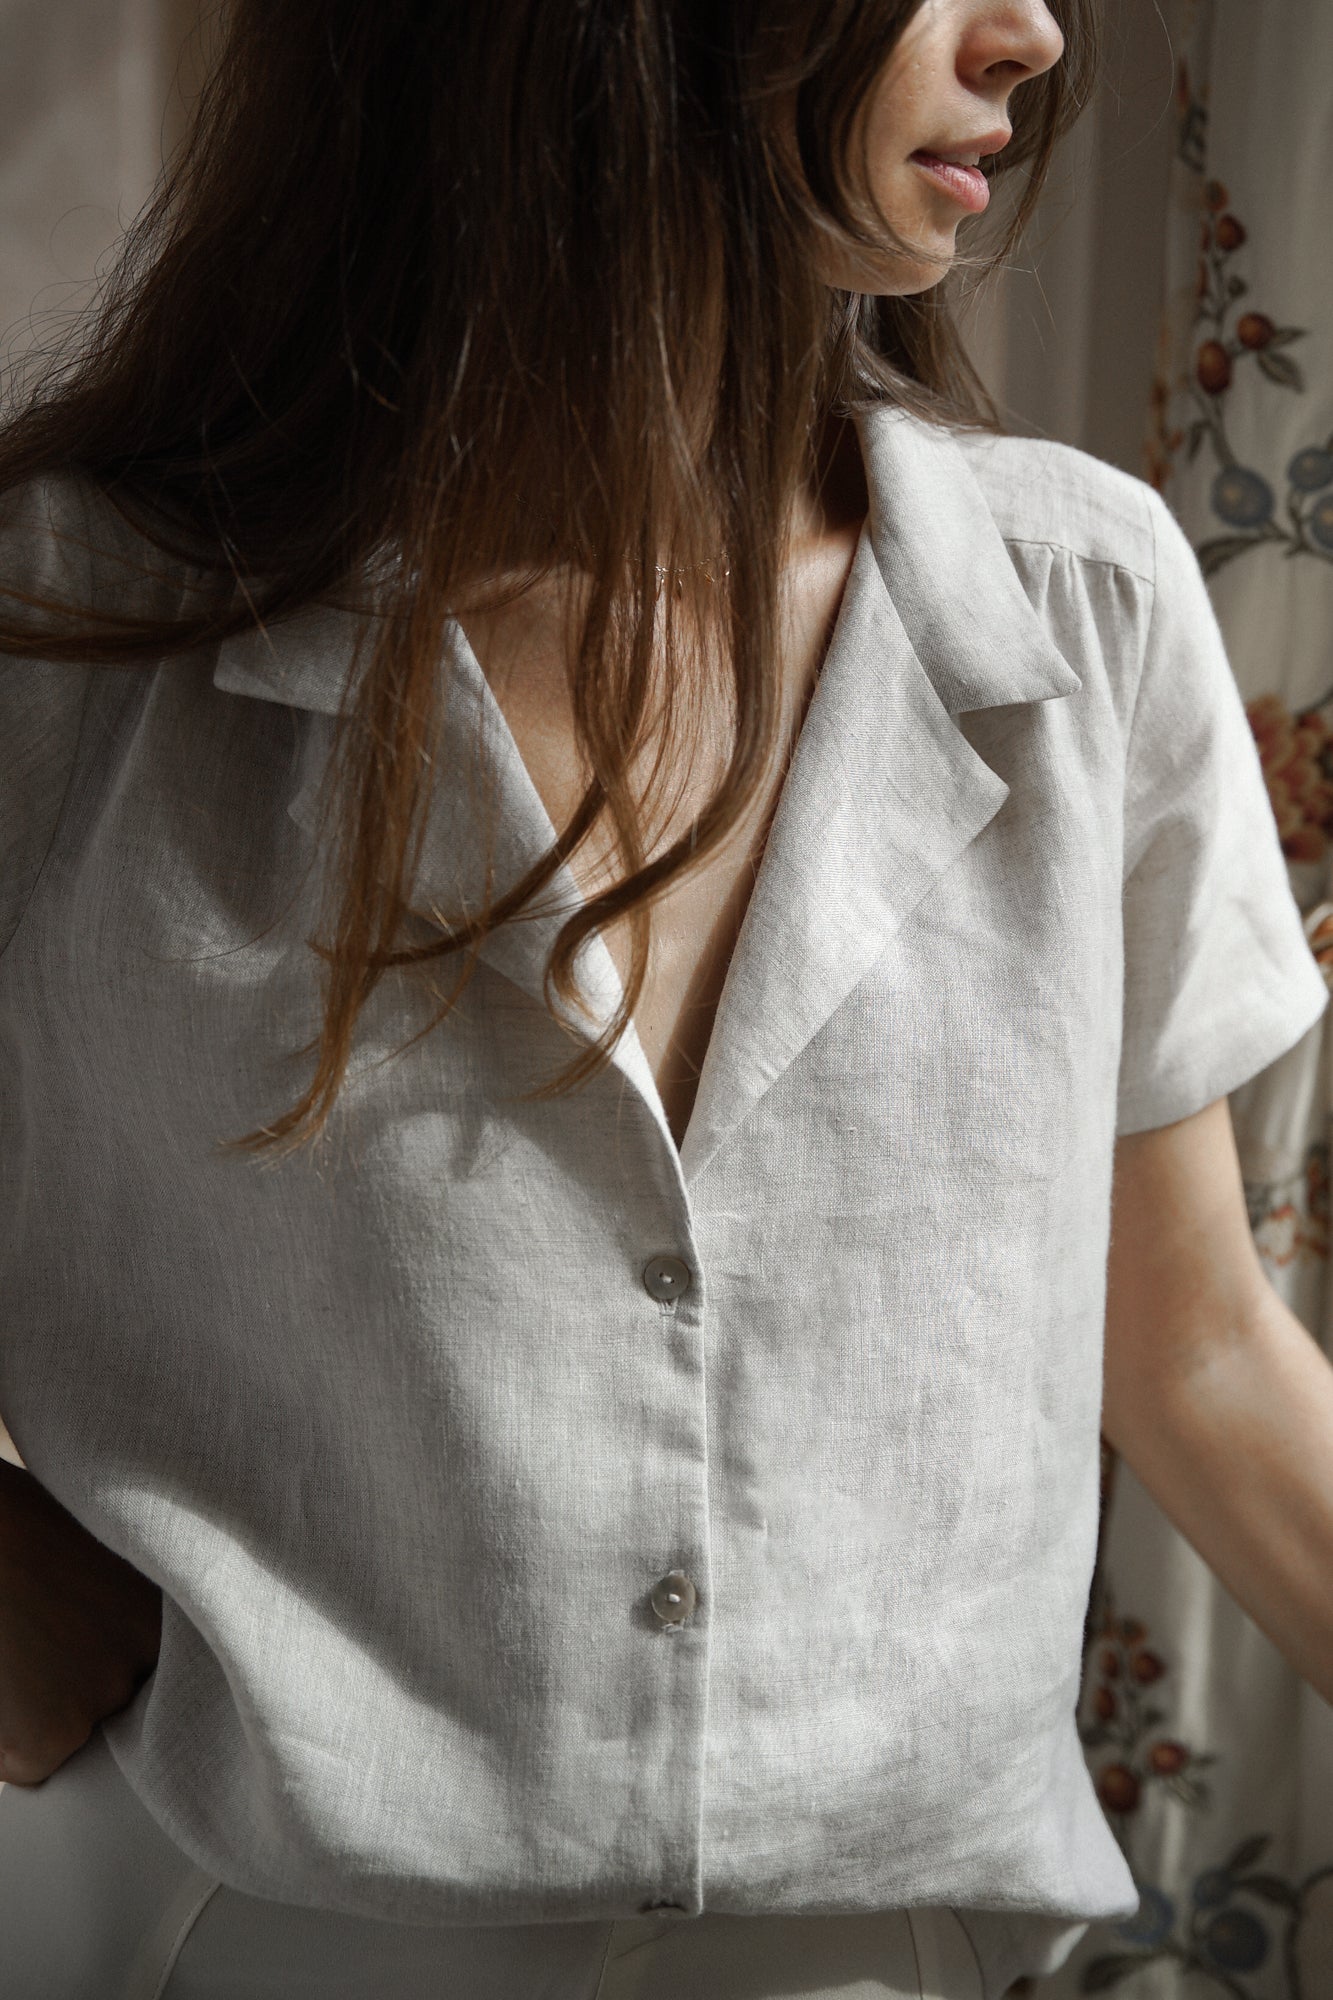 Femme portant une chemise en lin gris clair, avec un col tailleur minimaliste, des manches courtes ainsi que des boutons en nacre pour refermer sur le devant.